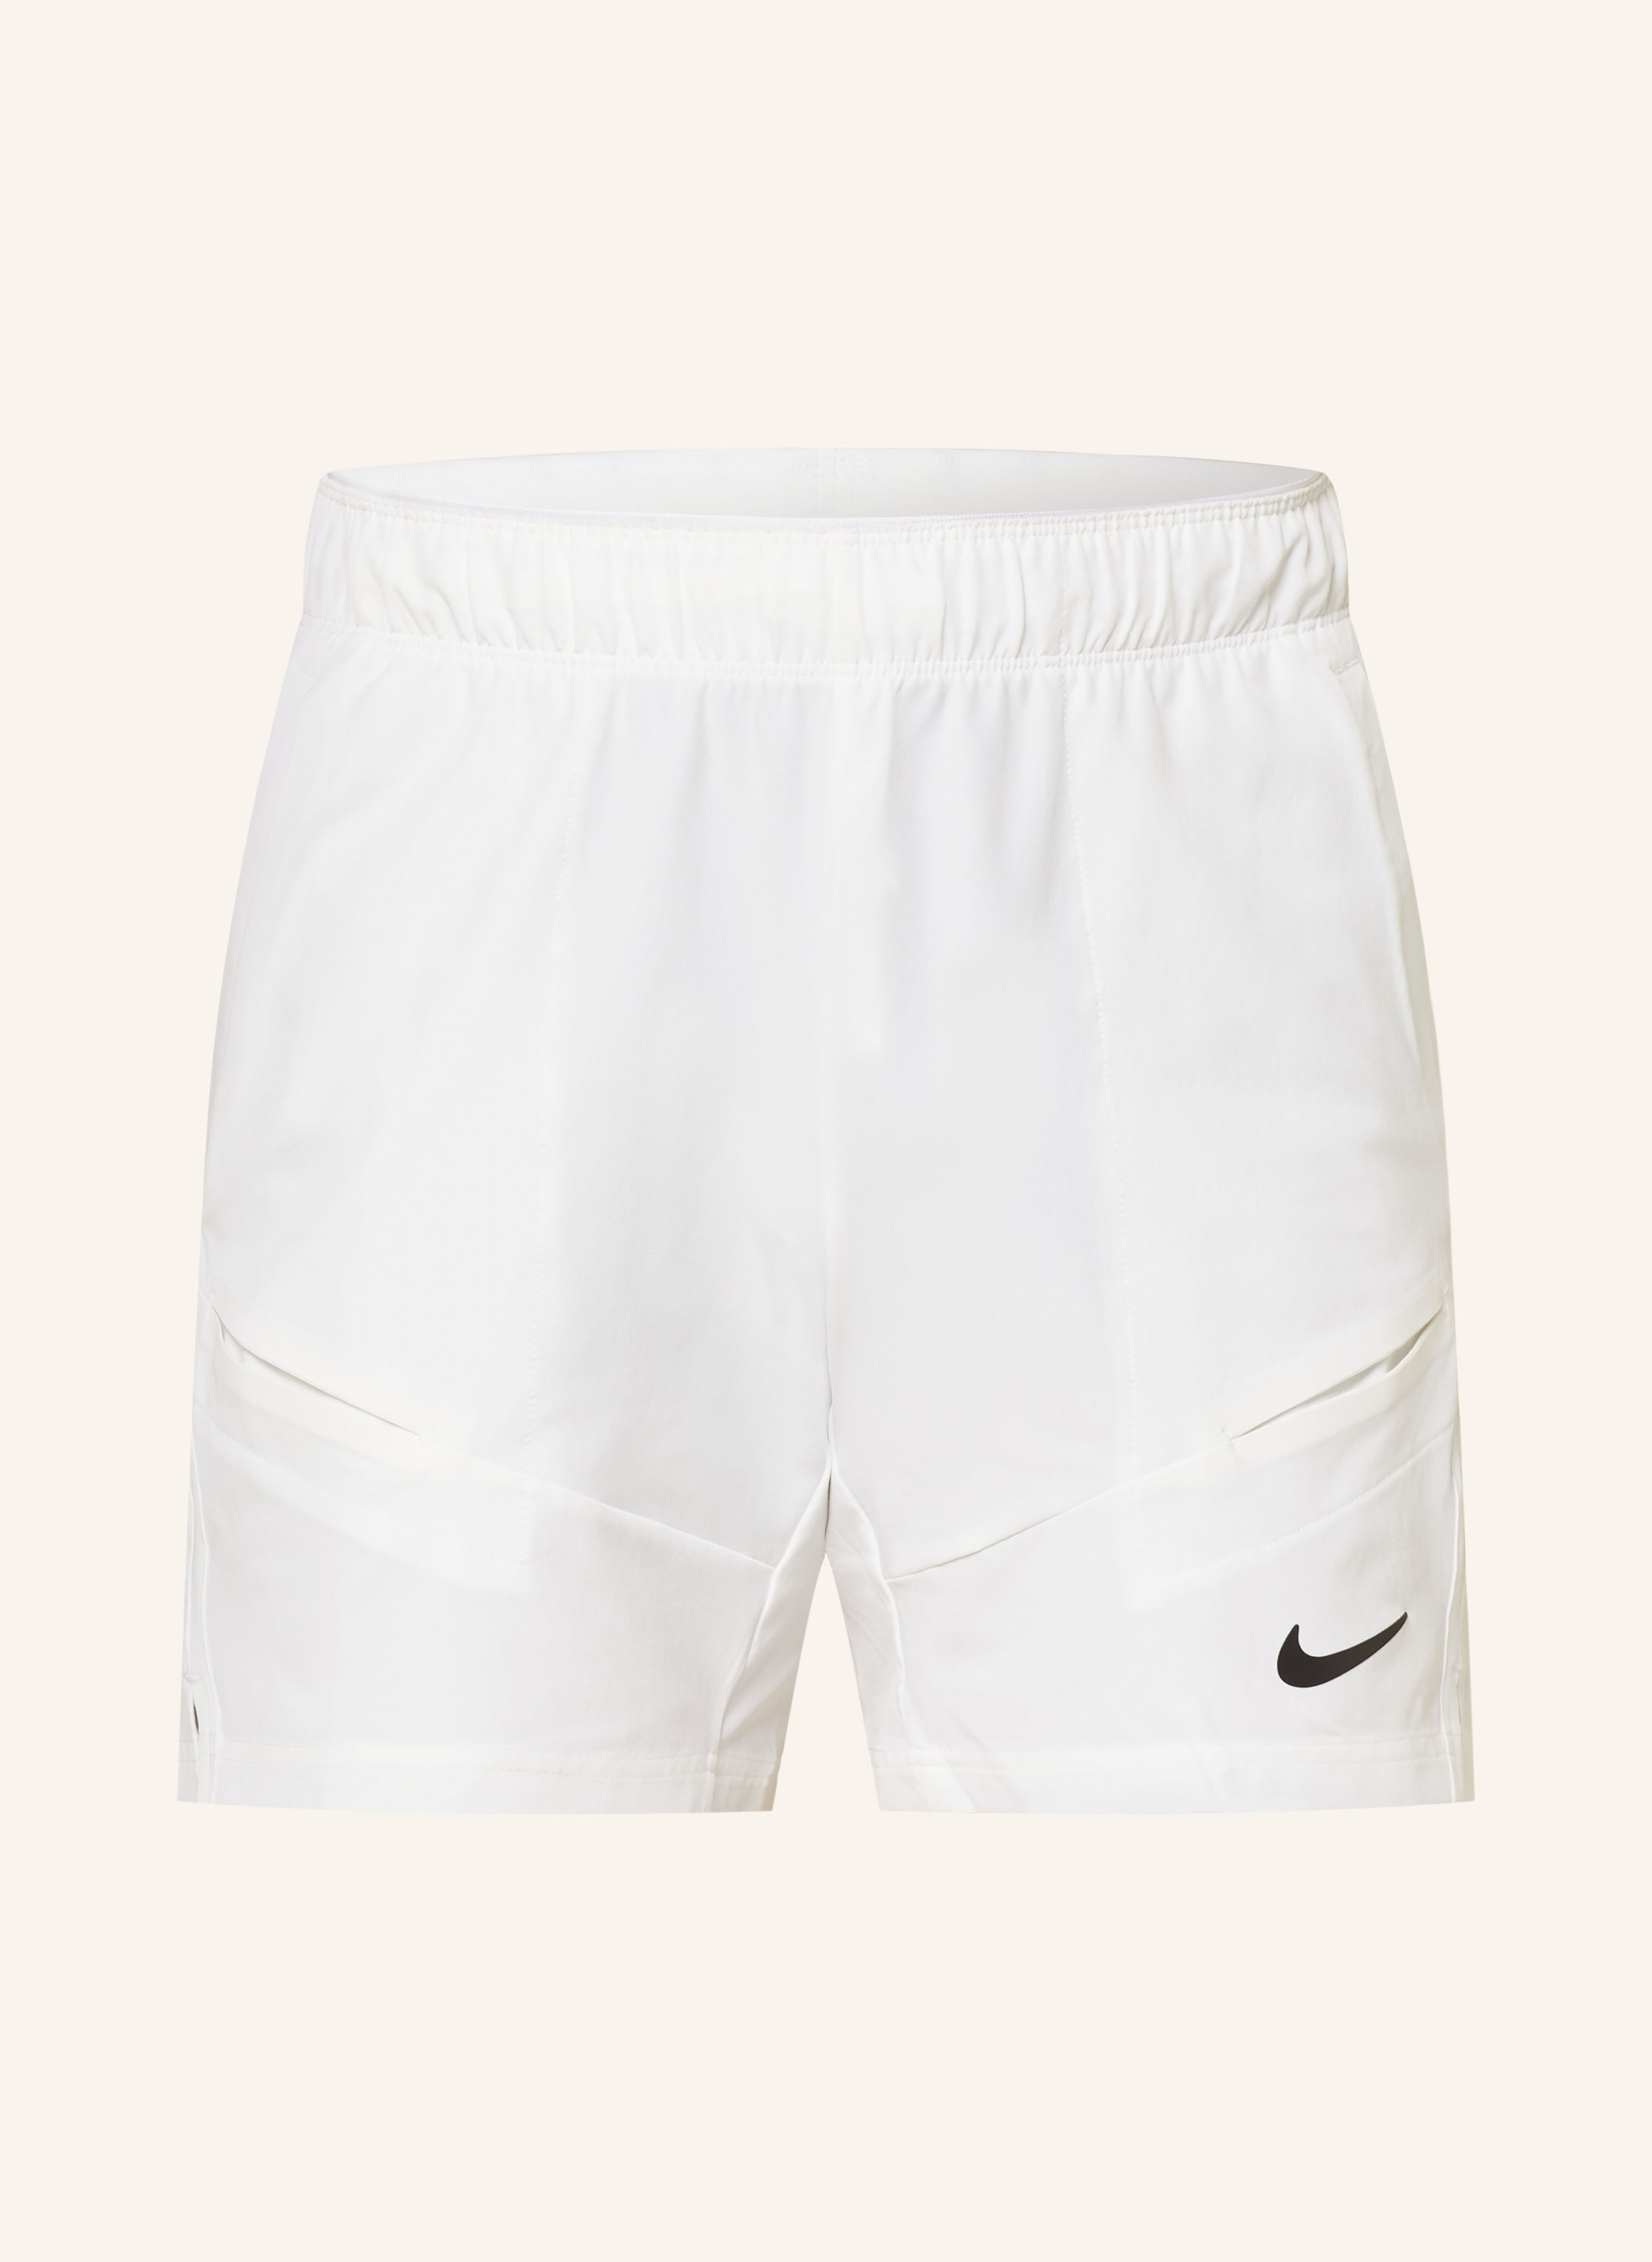 Men's Nike Court Flex Advantage Tennis Pants